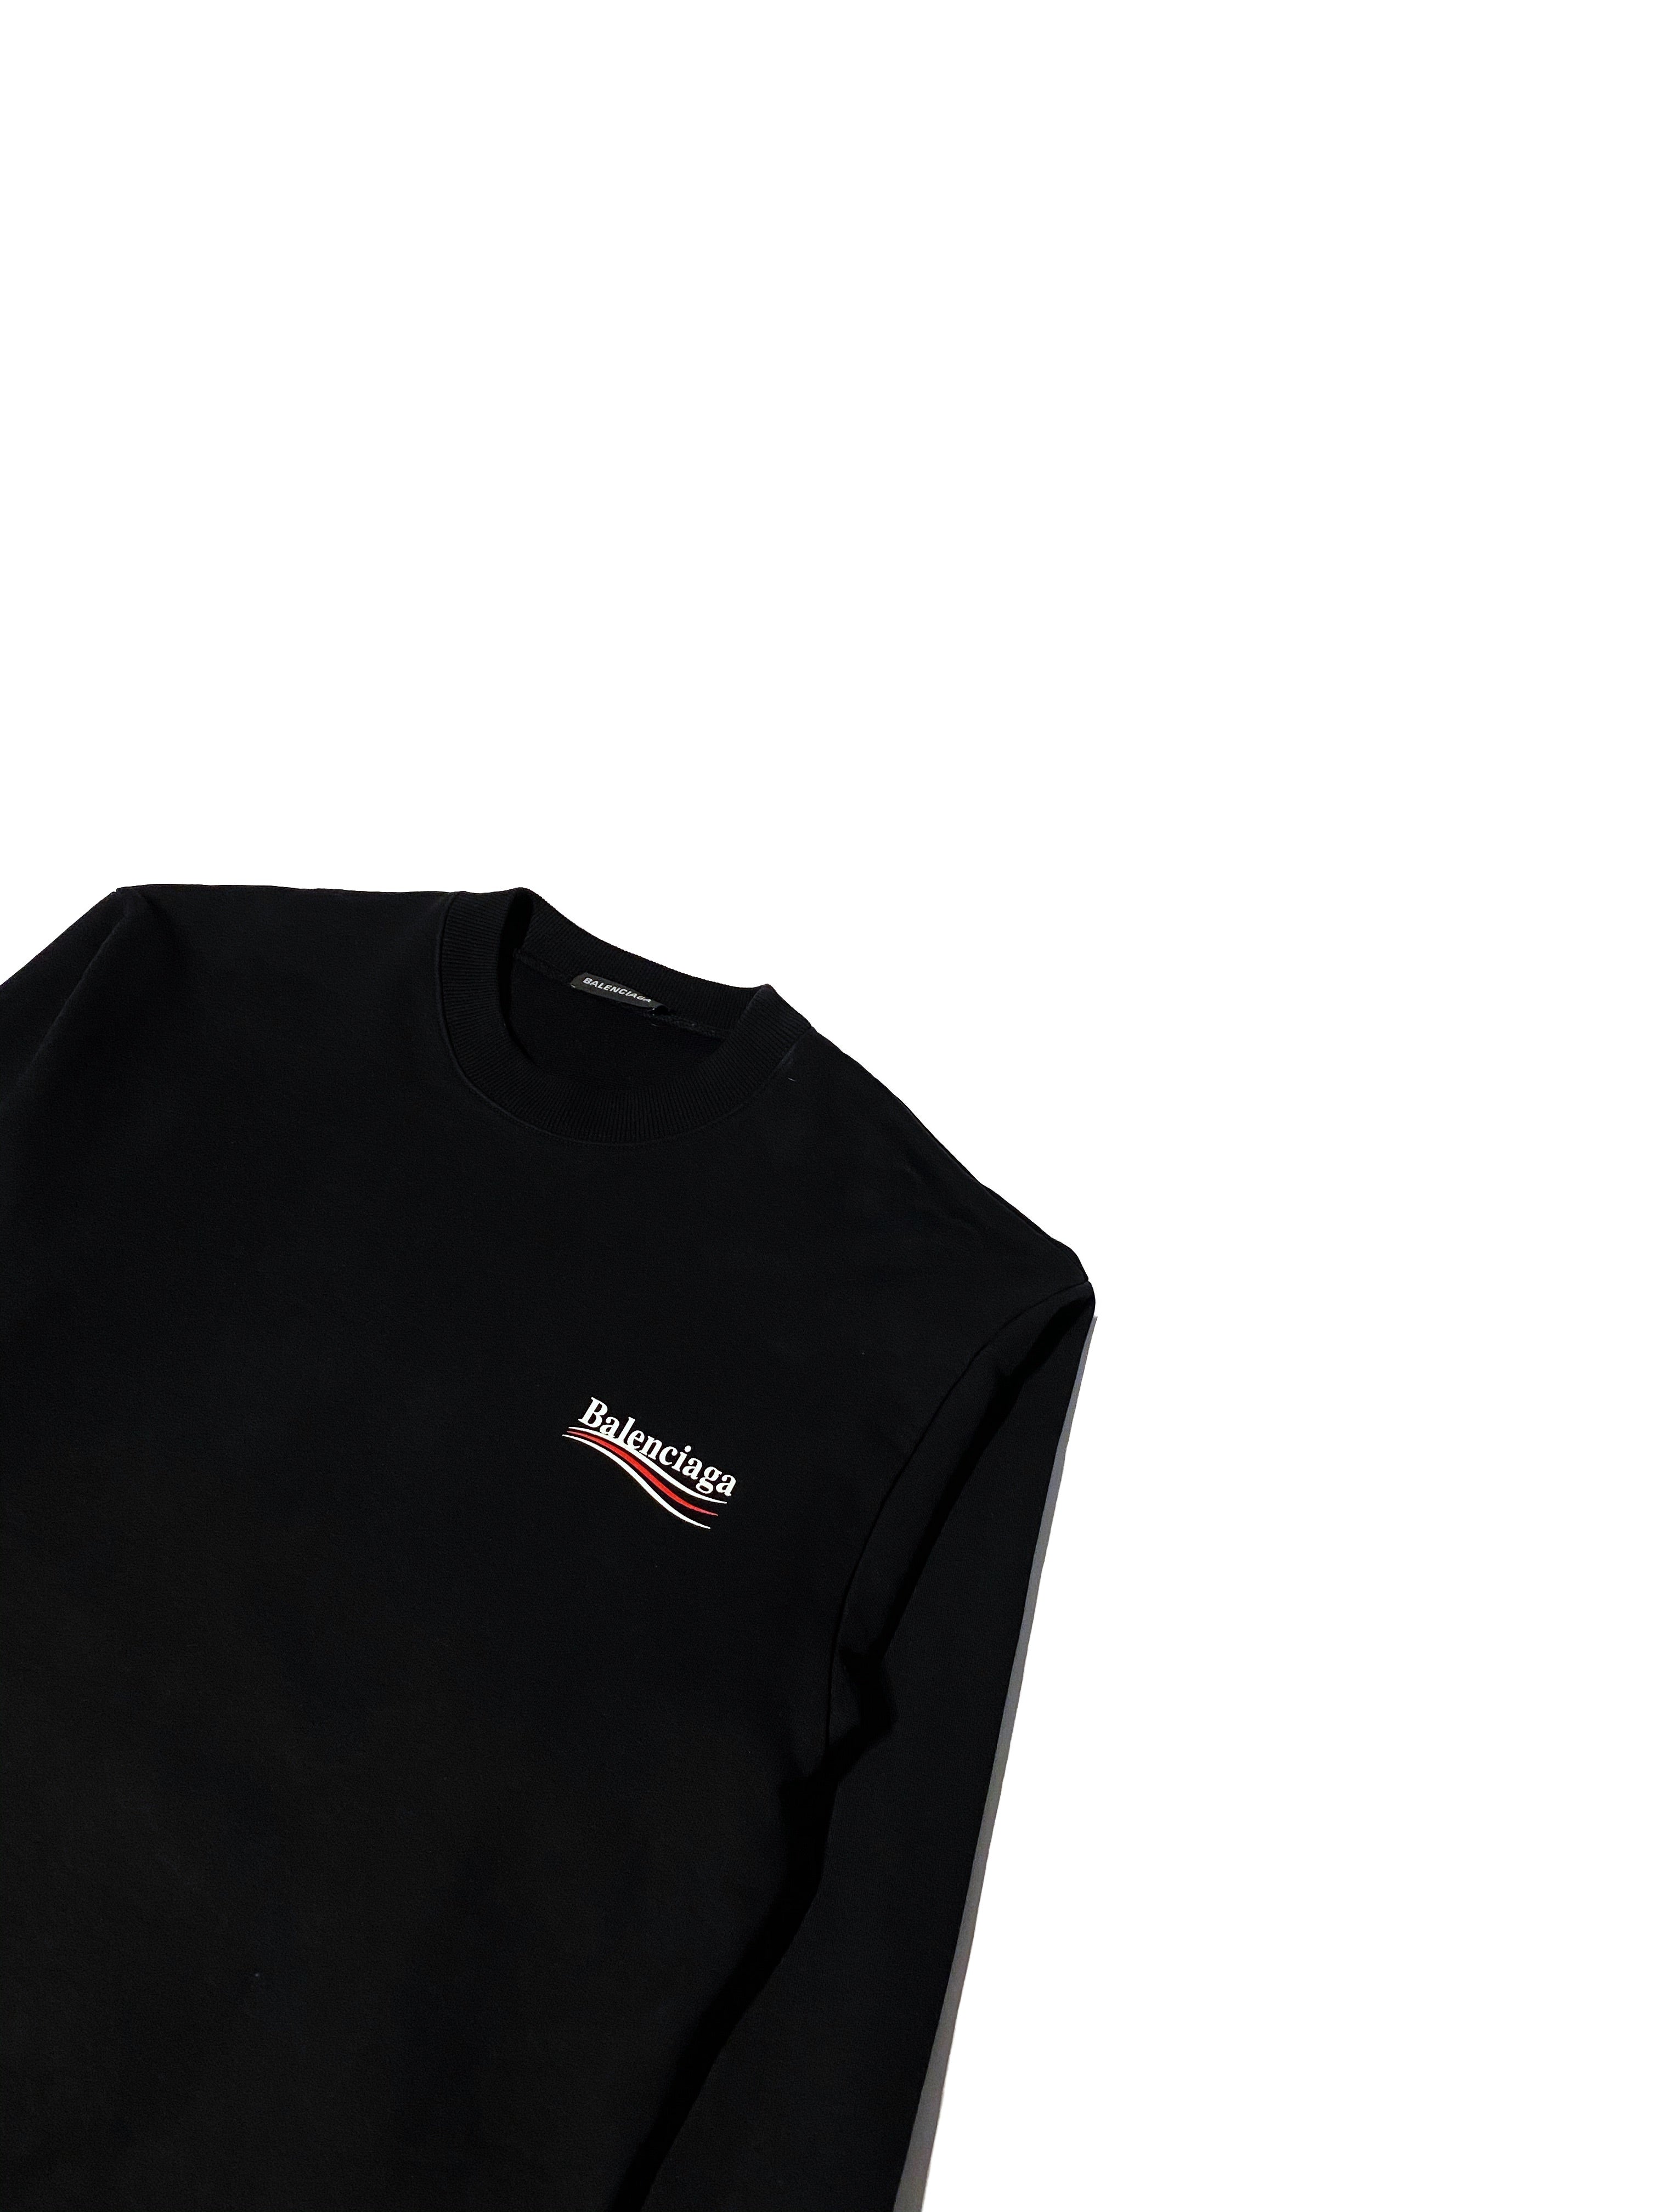 Balenciaga Campaign Sweater - Size L